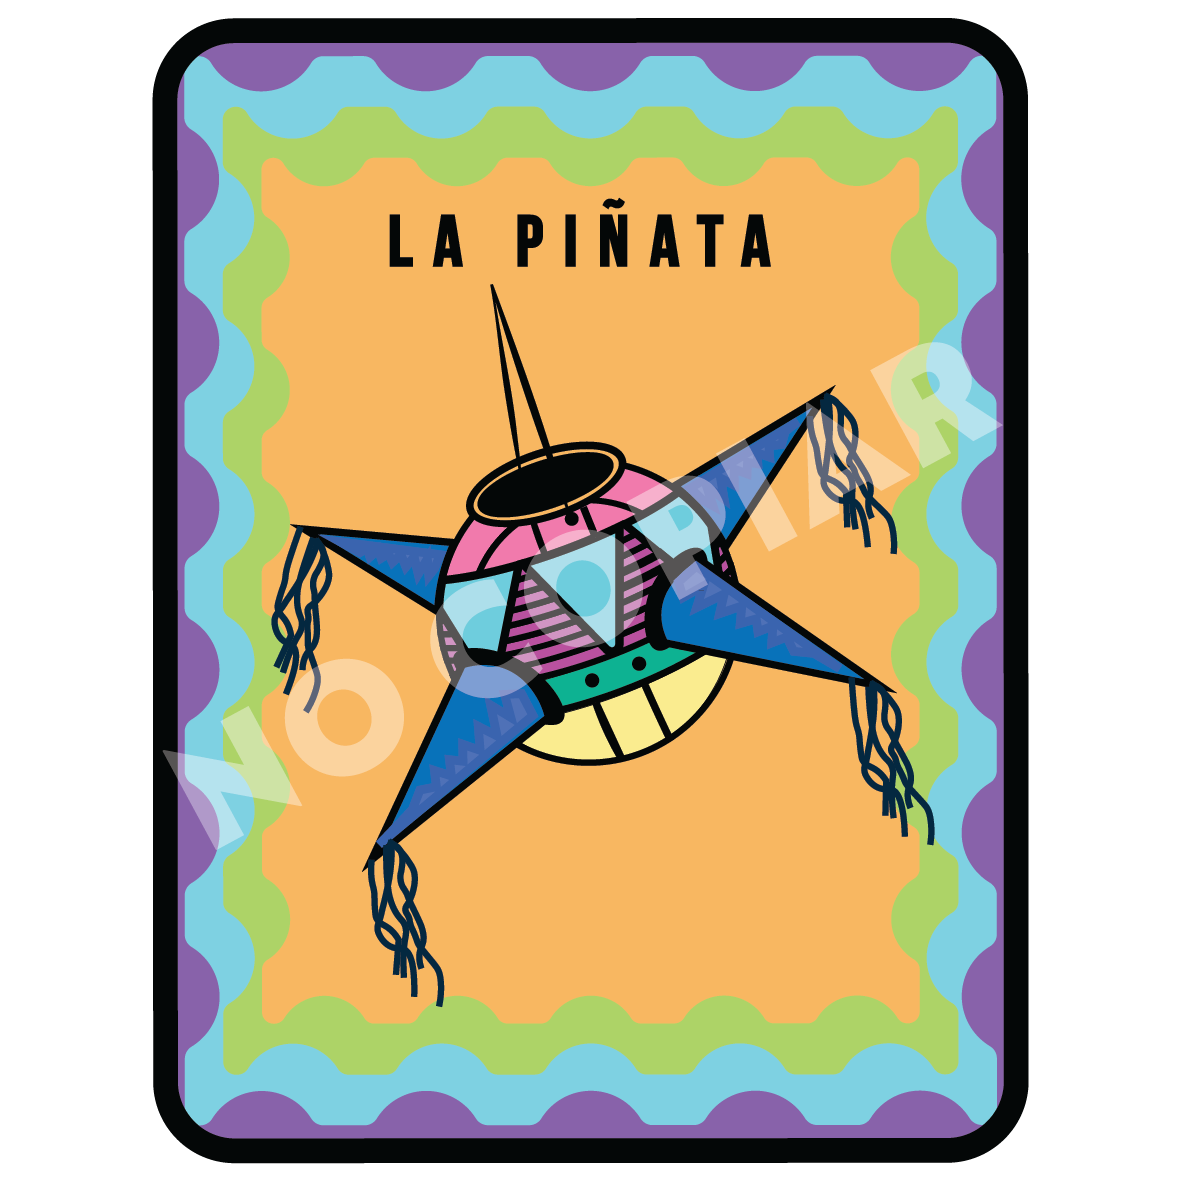 La piñata